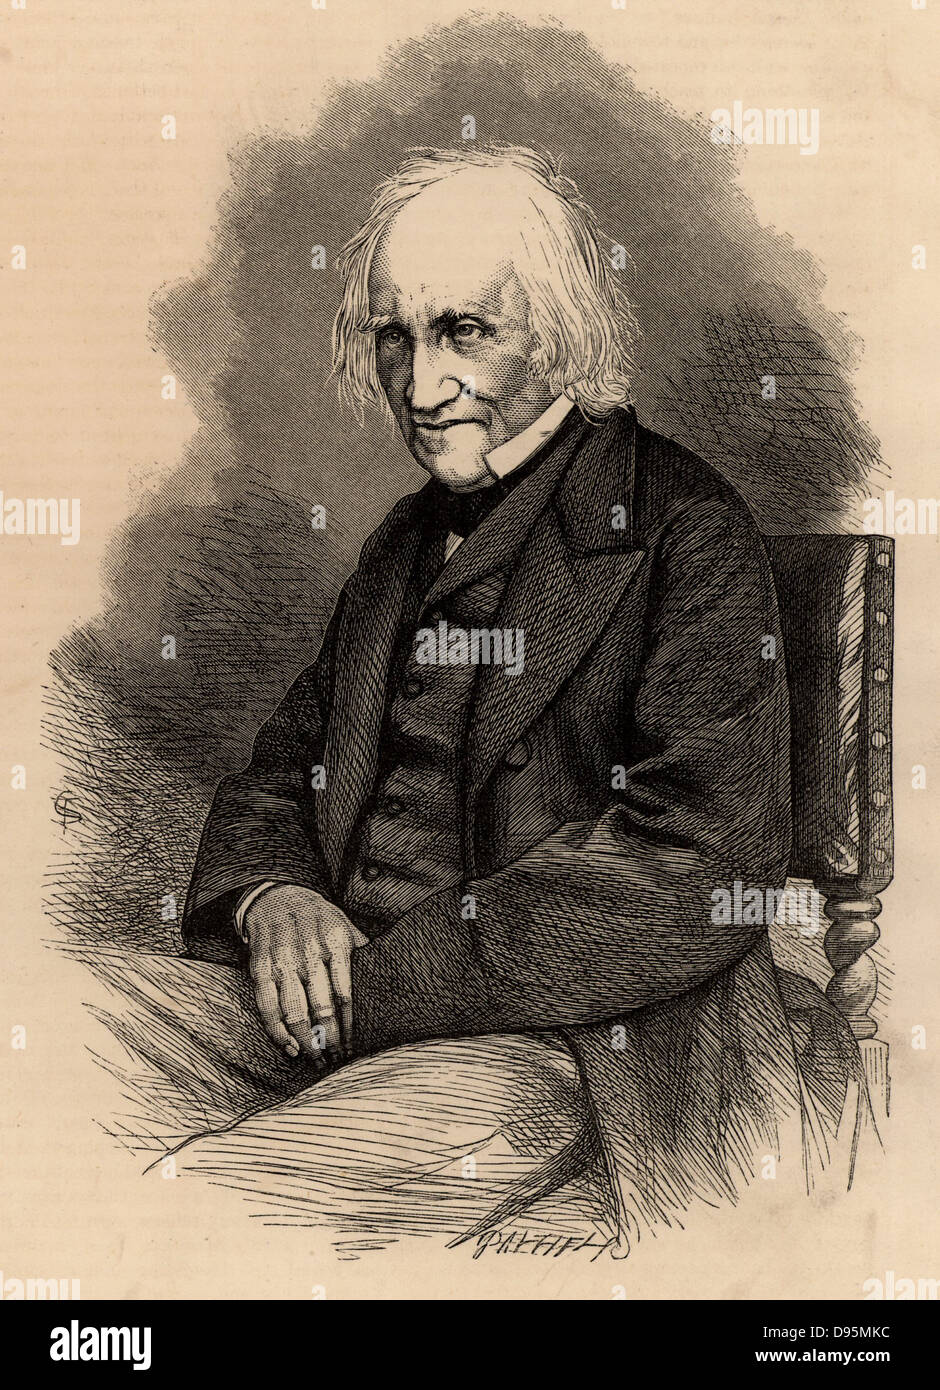 Charles Knight (1791-1873) inglese autore ed editore di economici illustrato libri e periodici. Incisione su legno del 1867. Foto Stock